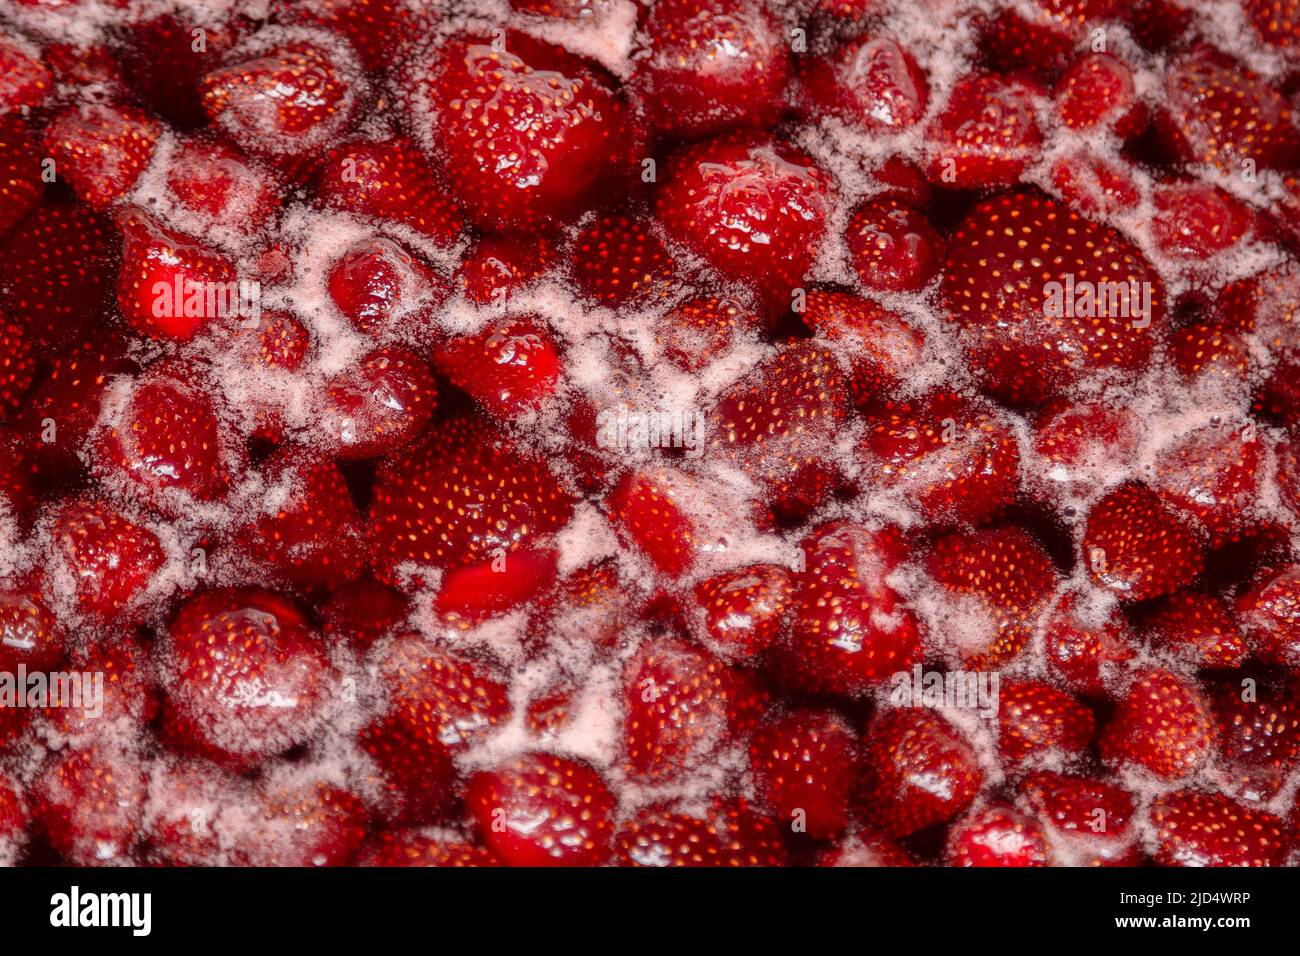 Leicht köchelende Erdbeermarmelade, detaillierte Nahaufnahme, Draufsicht. Schöne Erdbeermarmelade im Kochprozess. Kochende hausgemachte Erdbeermarmelade. Zubereitung einer hausgemachten Erdbeermarmelade. Kochendes Obst in einer Pfanne Stockfoto